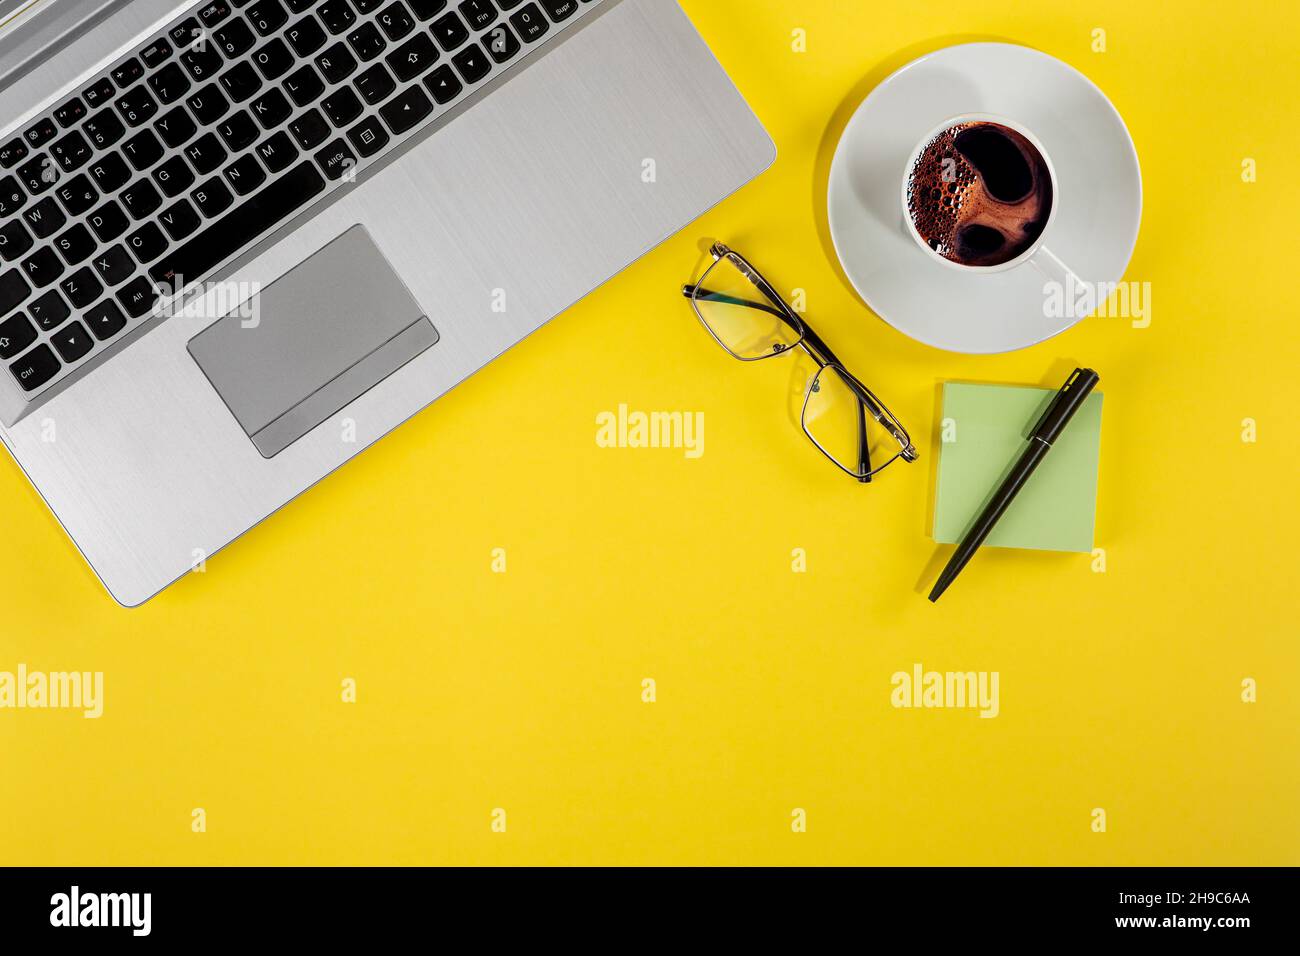 Vue de dessus photo studio d'un ordinateur portable, d'une tasse de café et d'éléments fixes sur fond jaune Banque D'Images